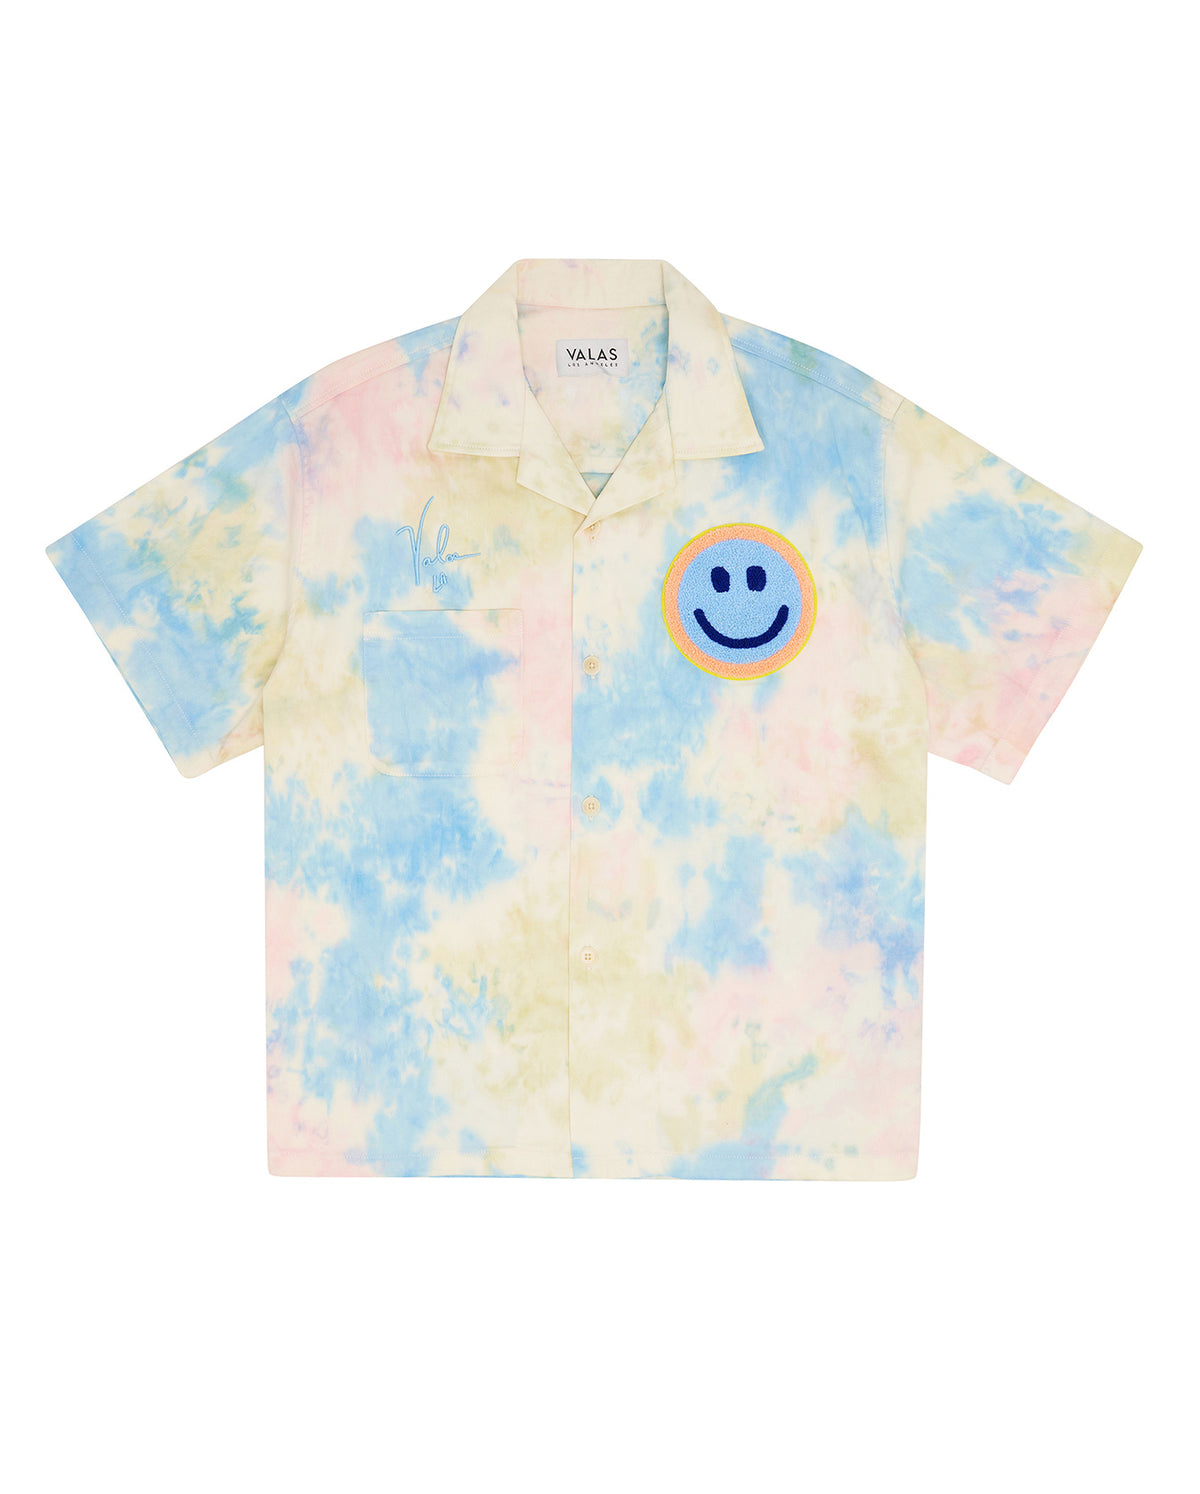 Smiley Tie Dye Bowler Shirt